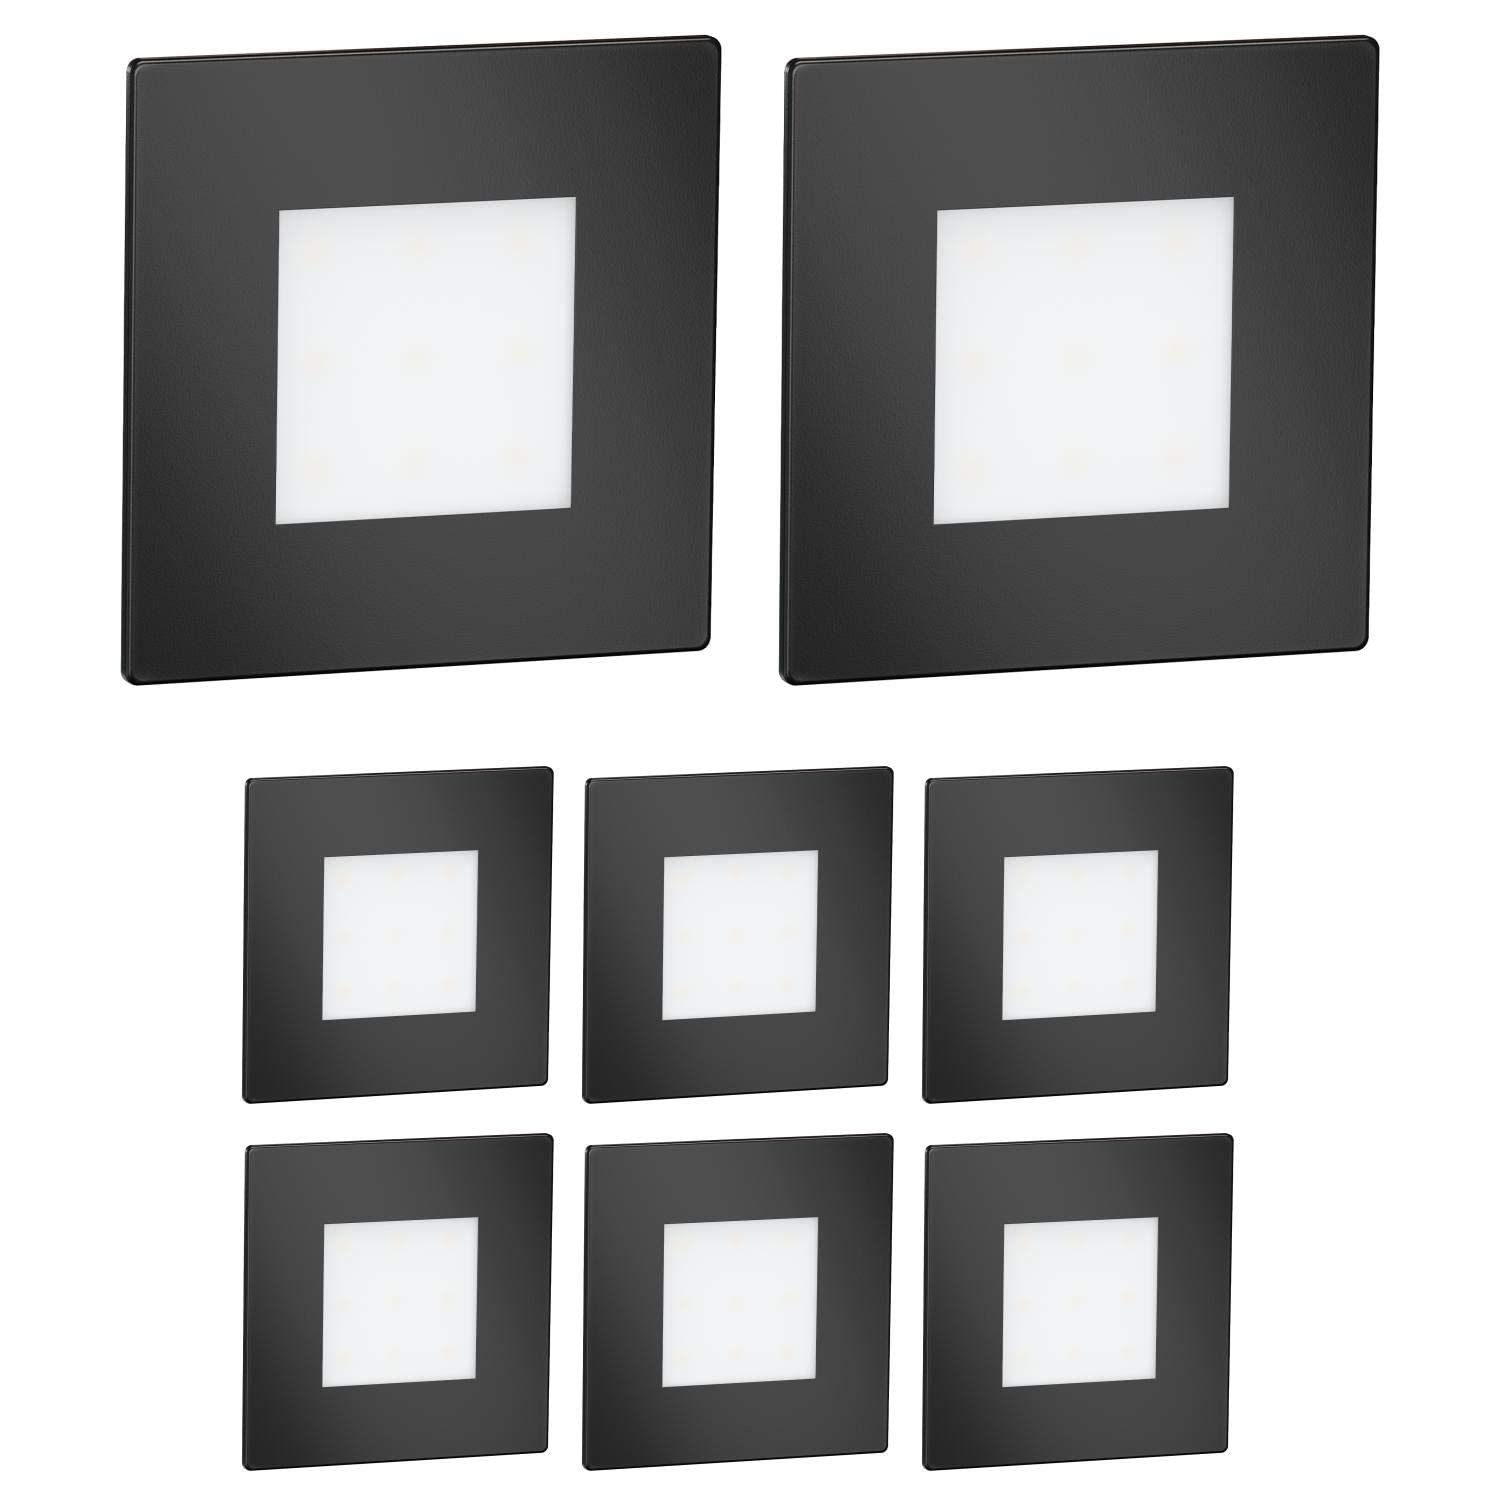 ledscom.de 8 Stück LED Treppenlicht/Wandeinbauleuchte FEX für innen und außen, eckig, schwarz, 85 x 85mm, kaltweiß